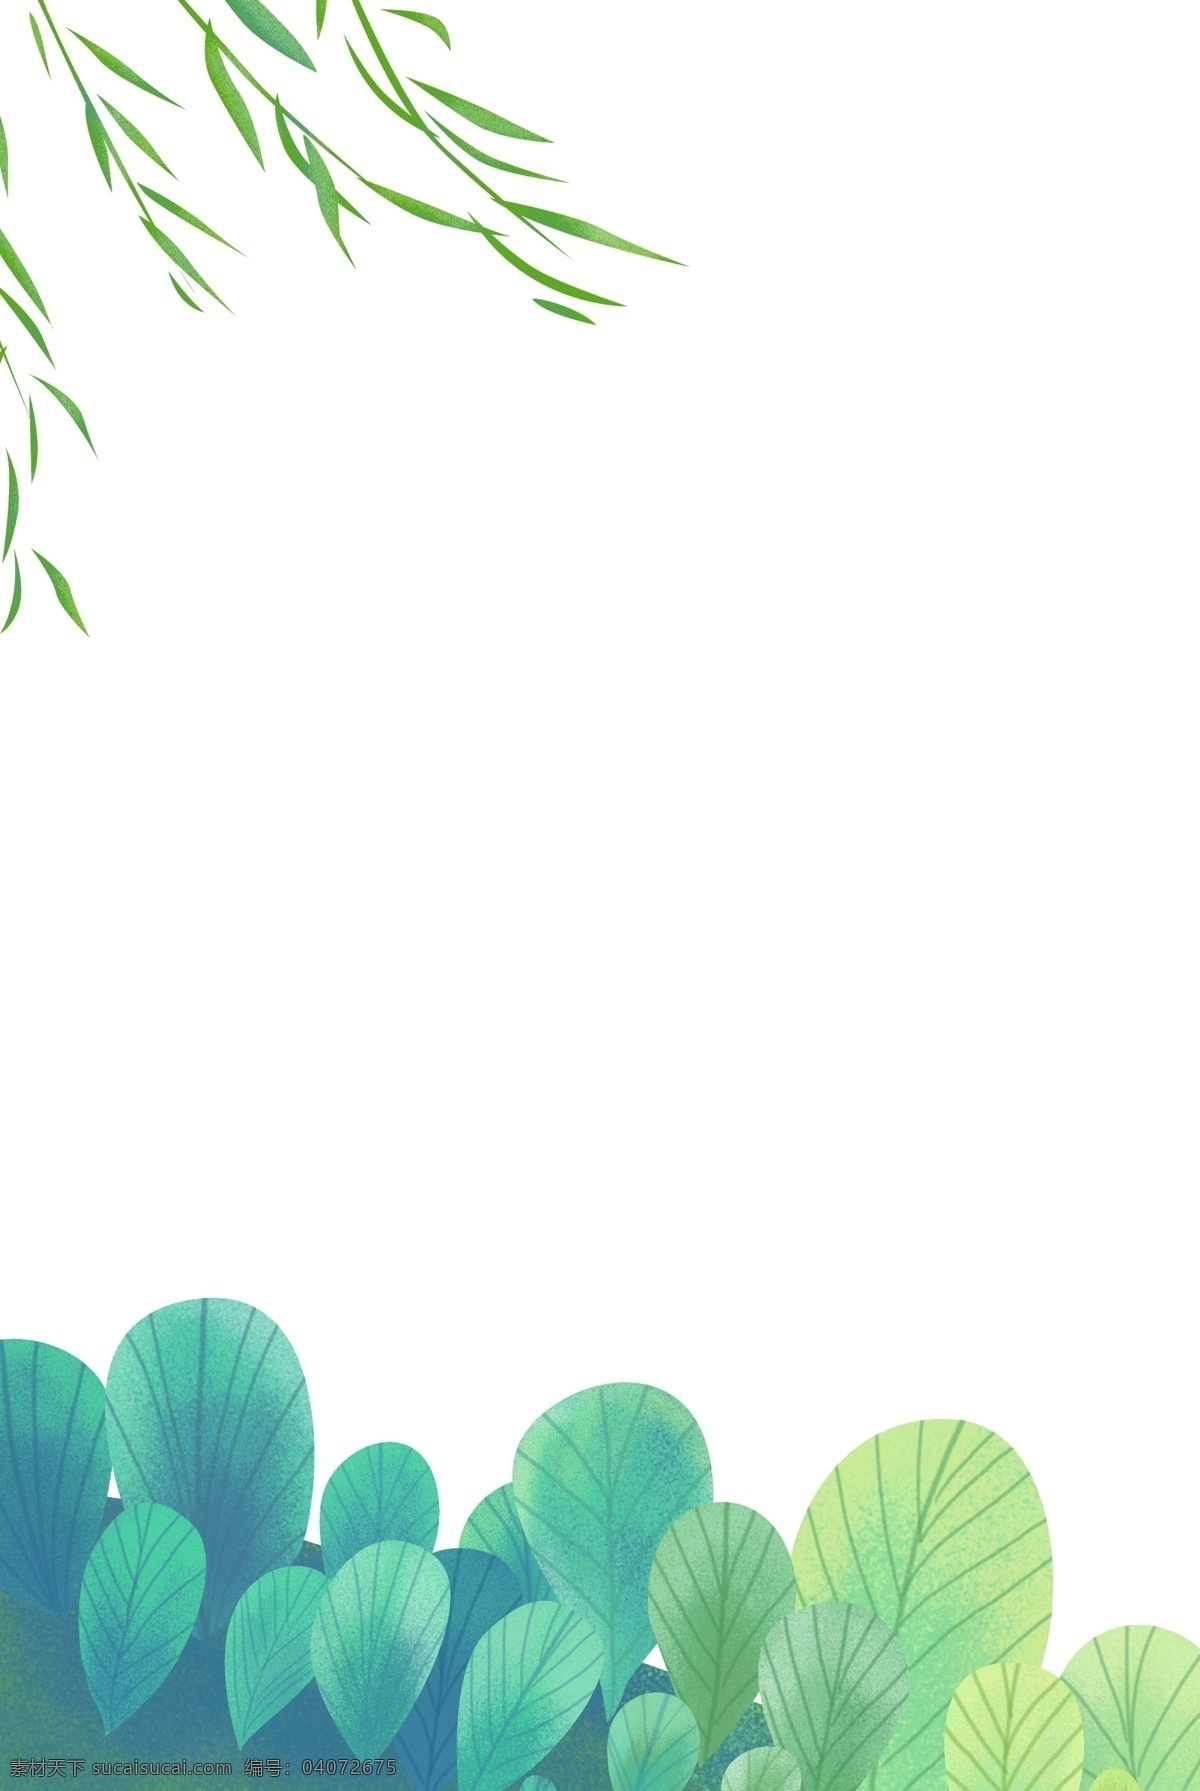 手绘 清新 植物 边框 春天 柳树 树叶 叶子 绿植 立春 海报边框 绿色 绿色边框 植物边框 插画